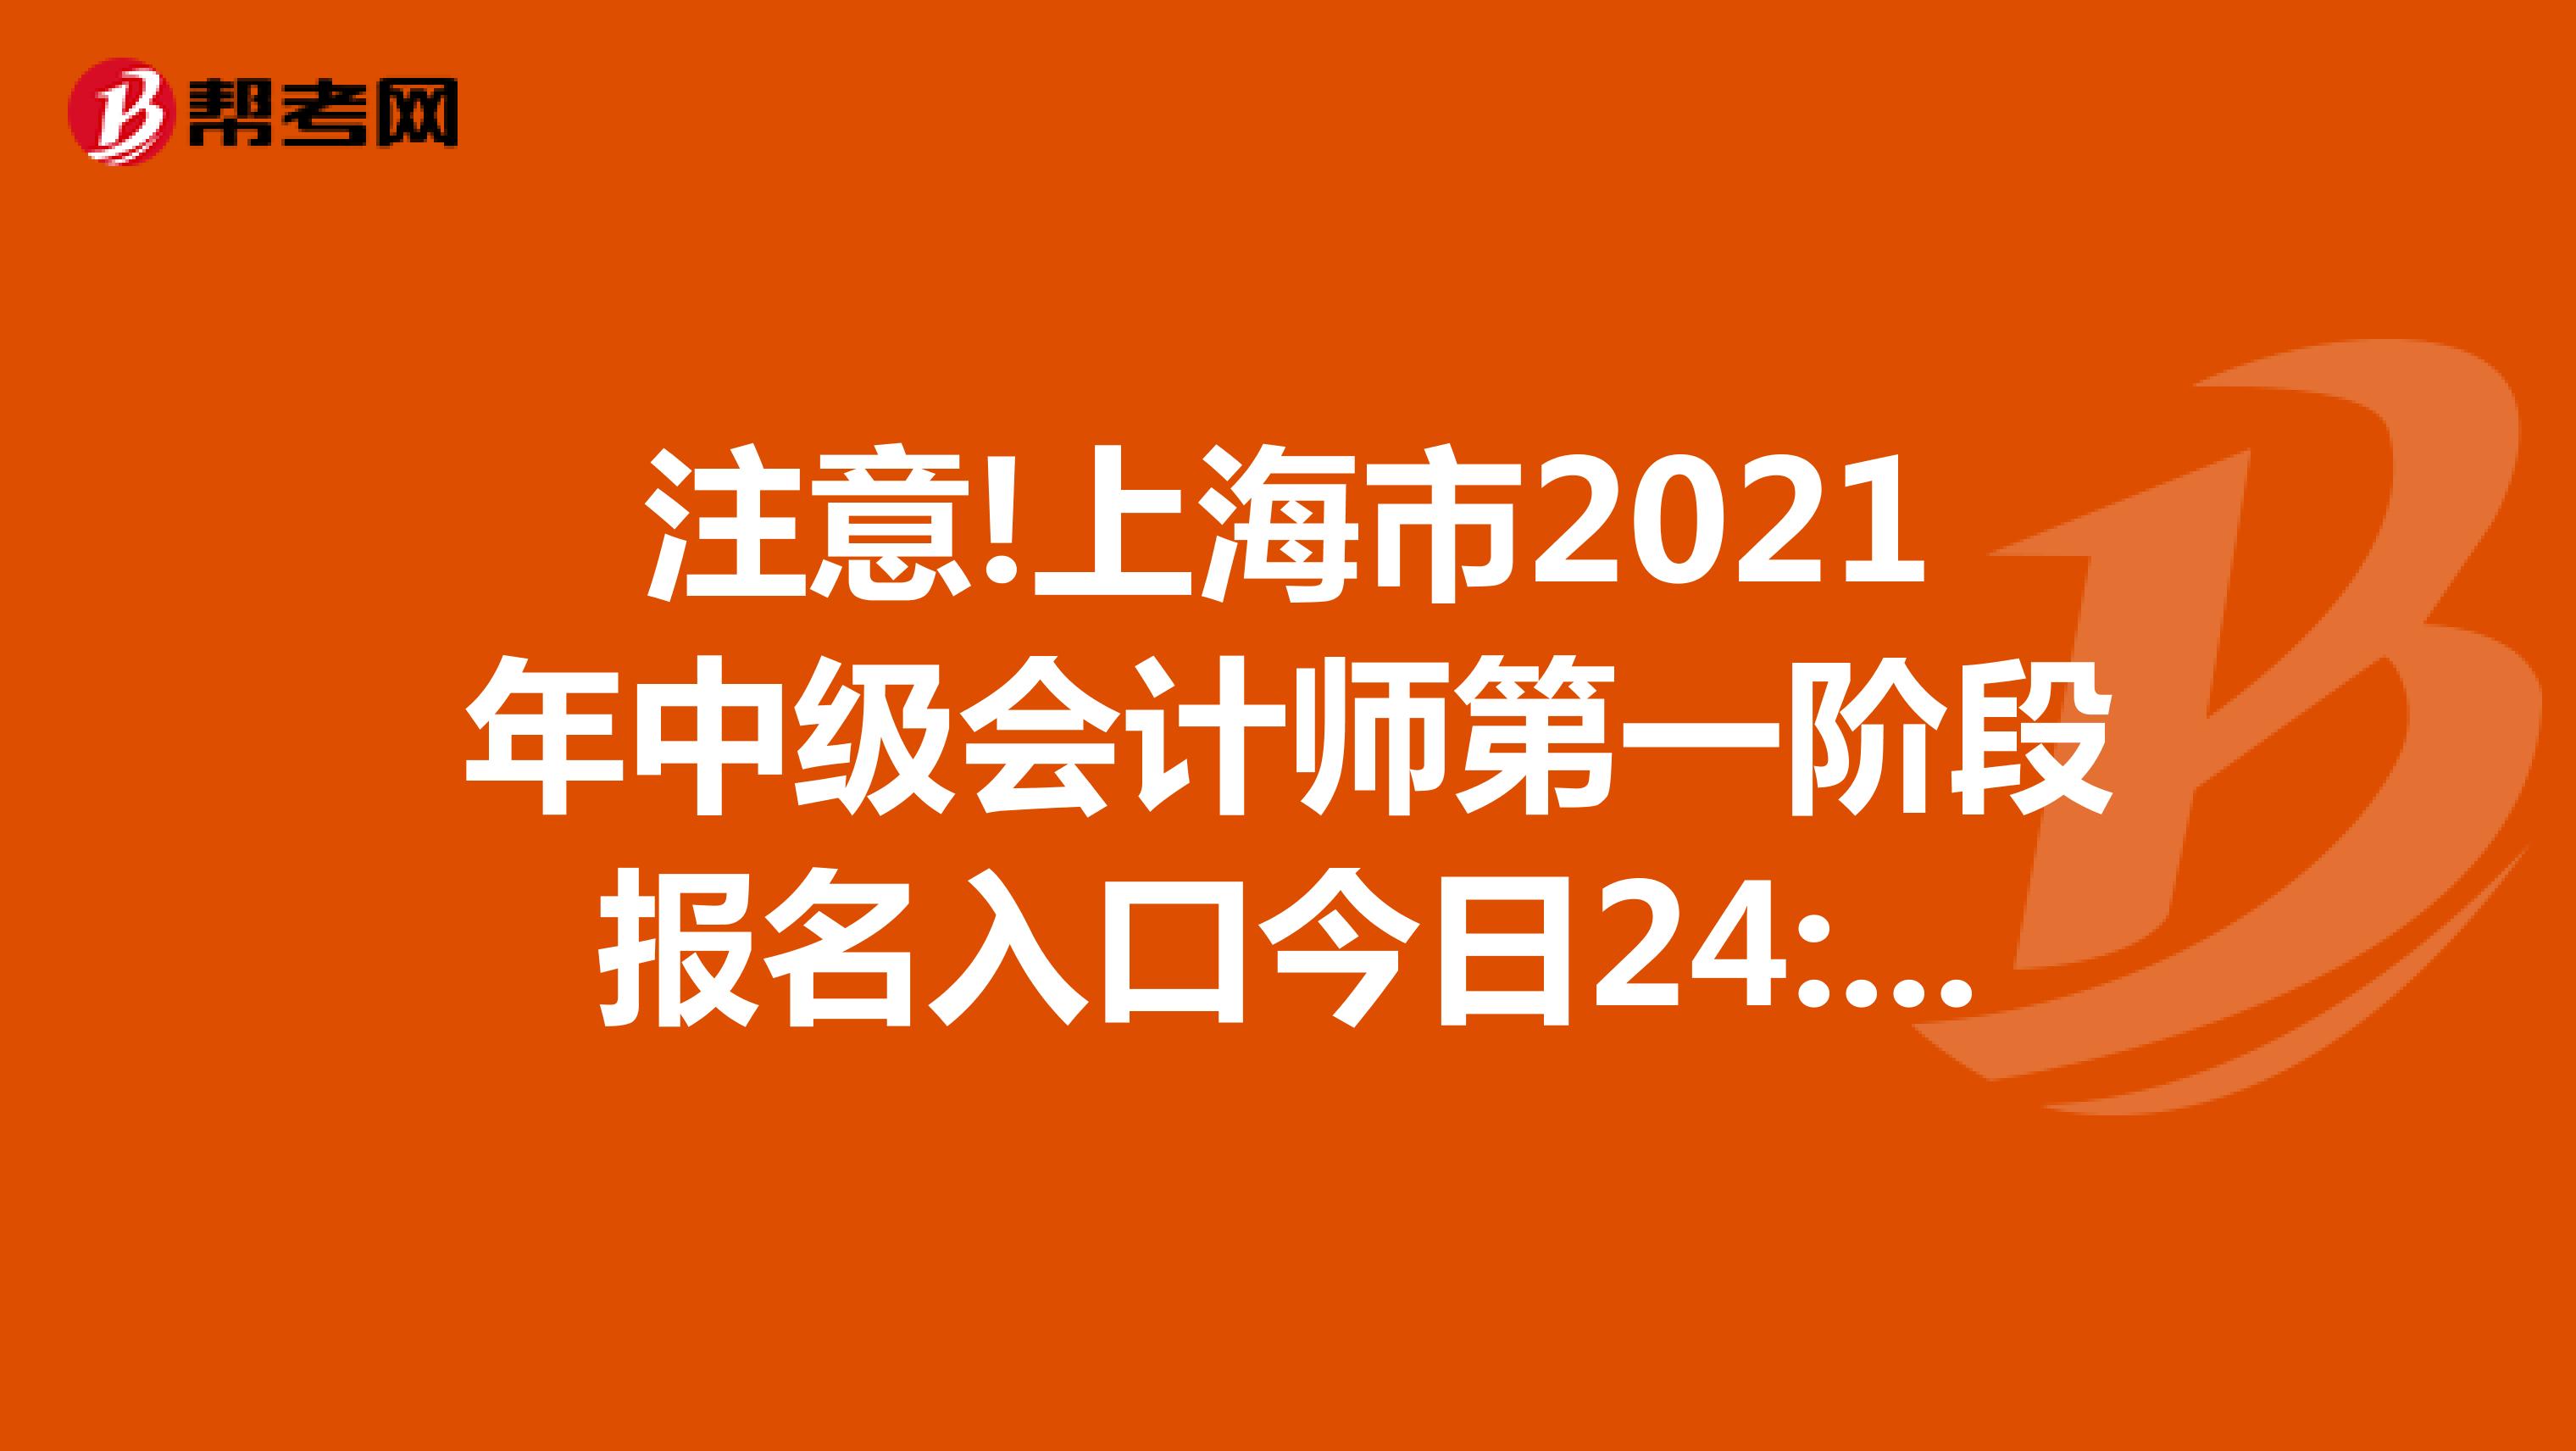 注意!上海市2021年中级会计师第一阶段报名入口今日24:00关闭!